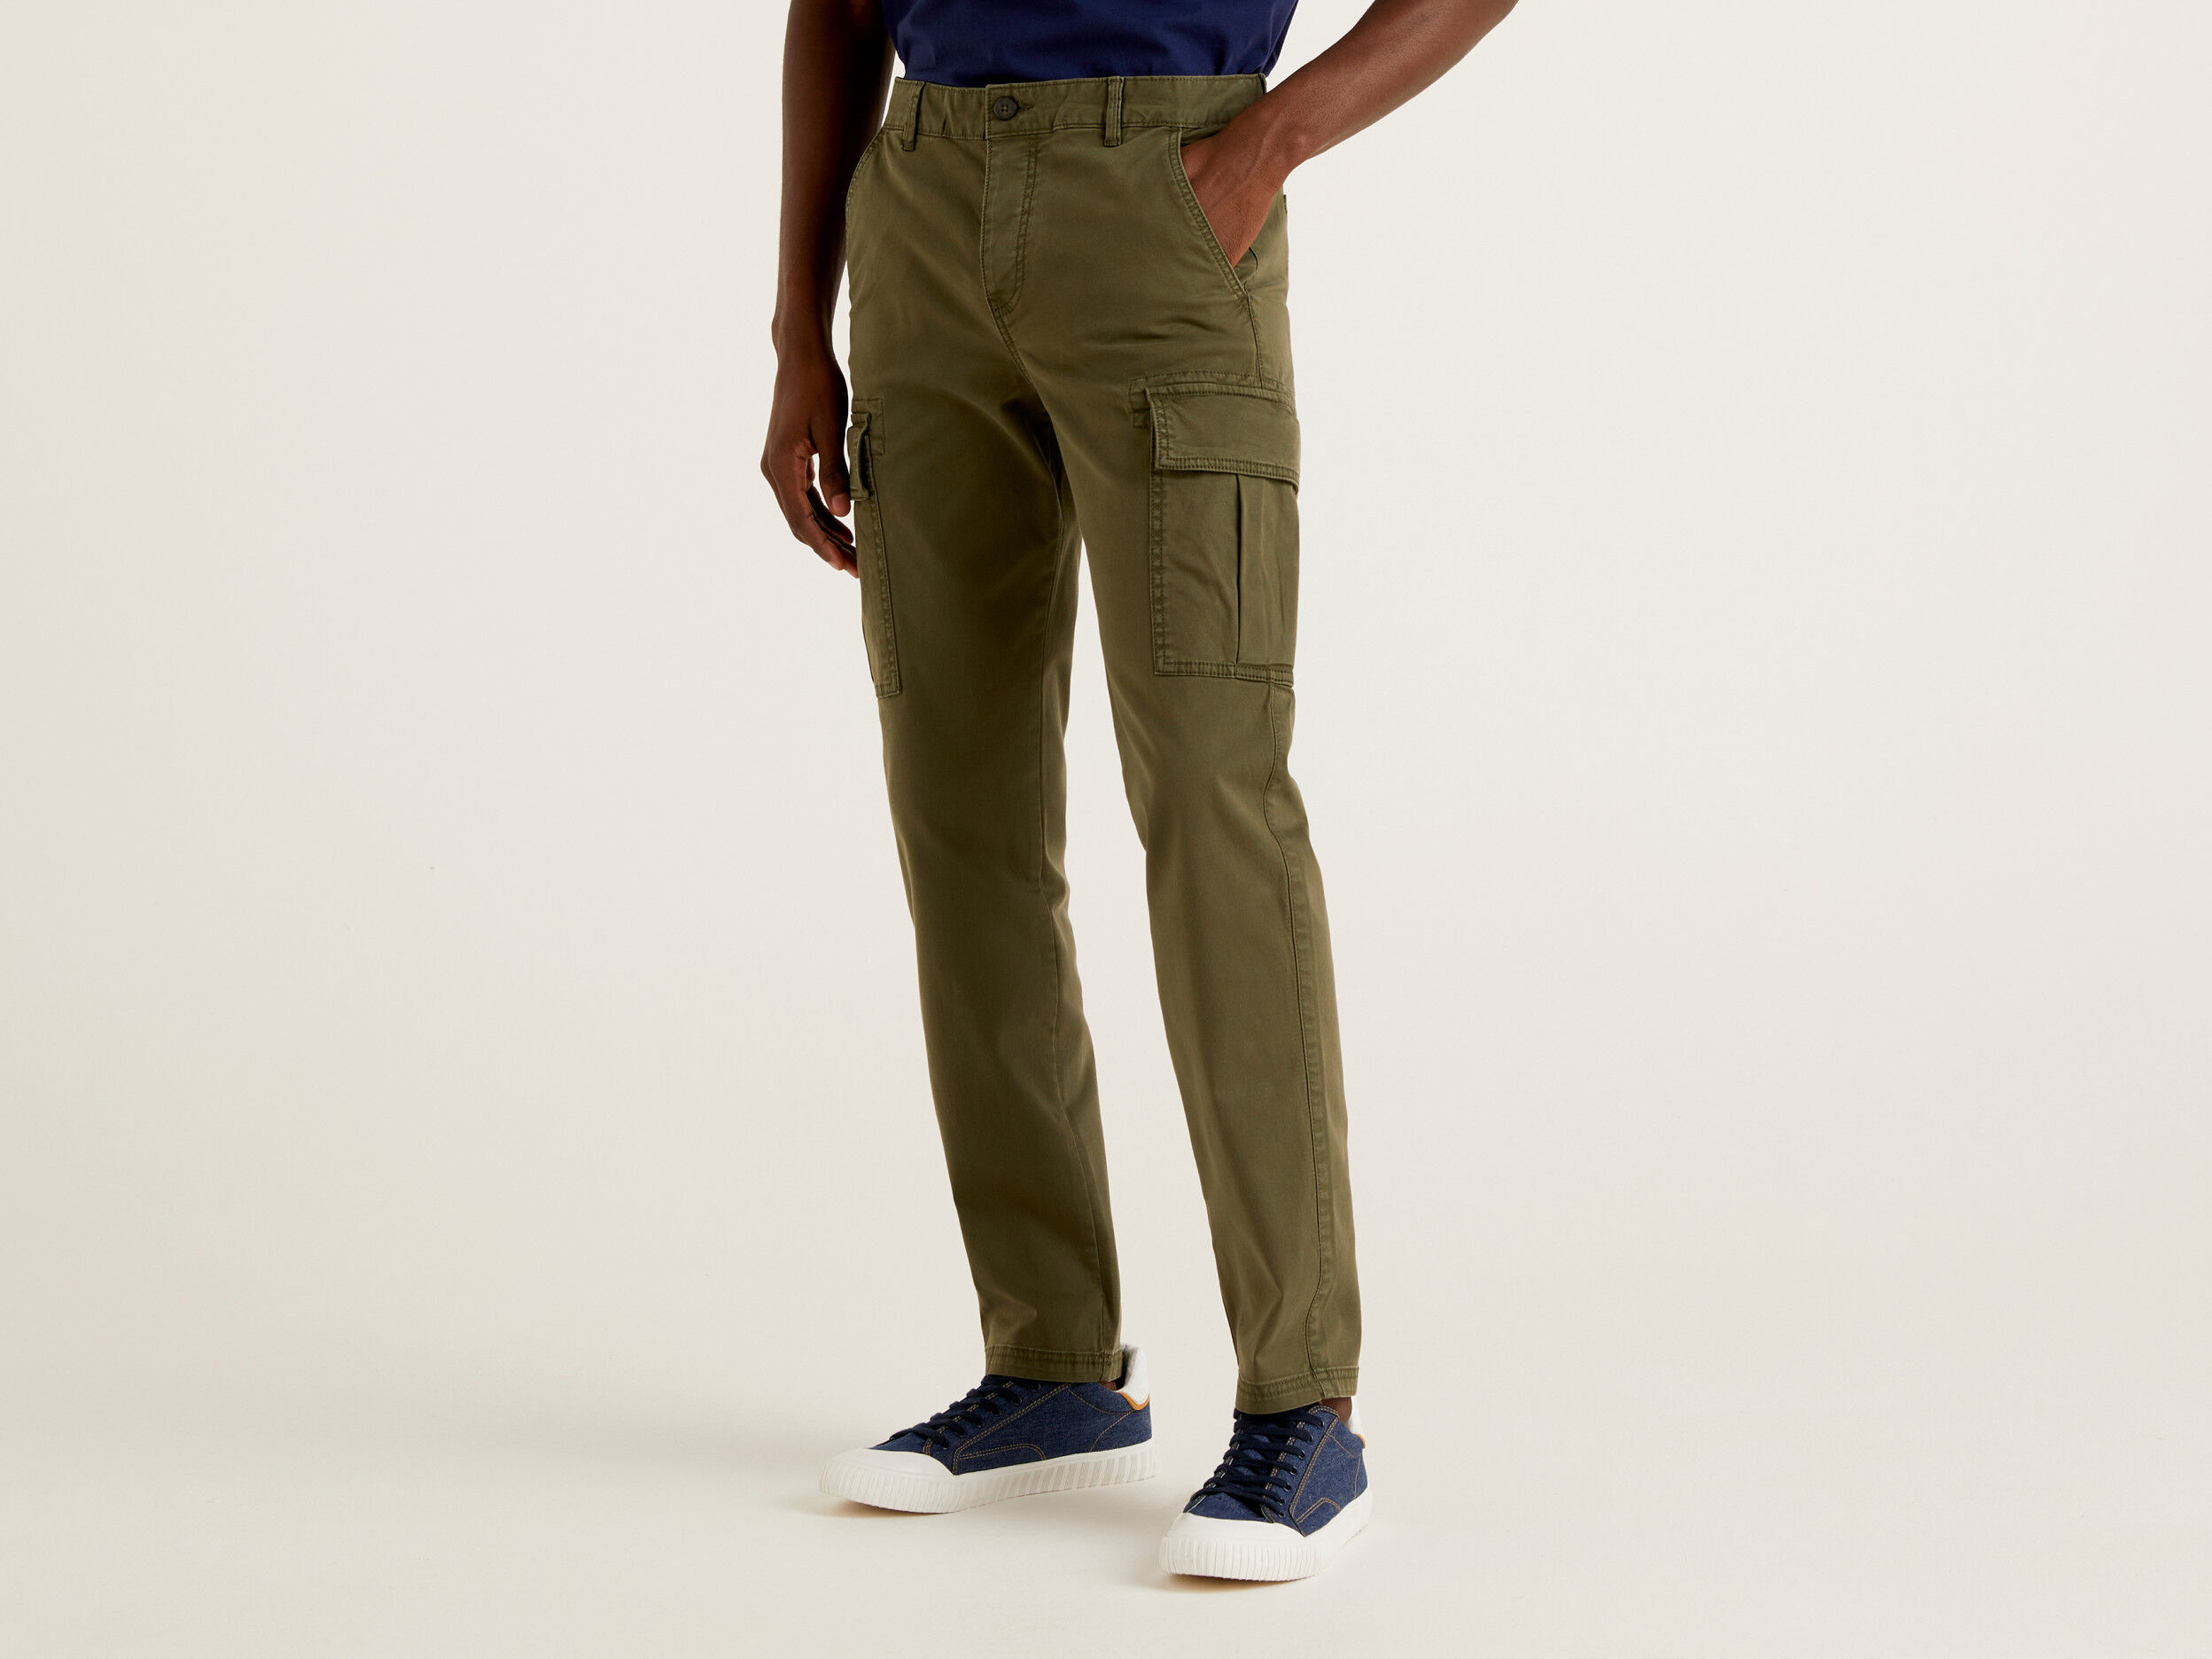 Buy Men's Beige Slim Fit Cargo Trousers Online at Bewakoof